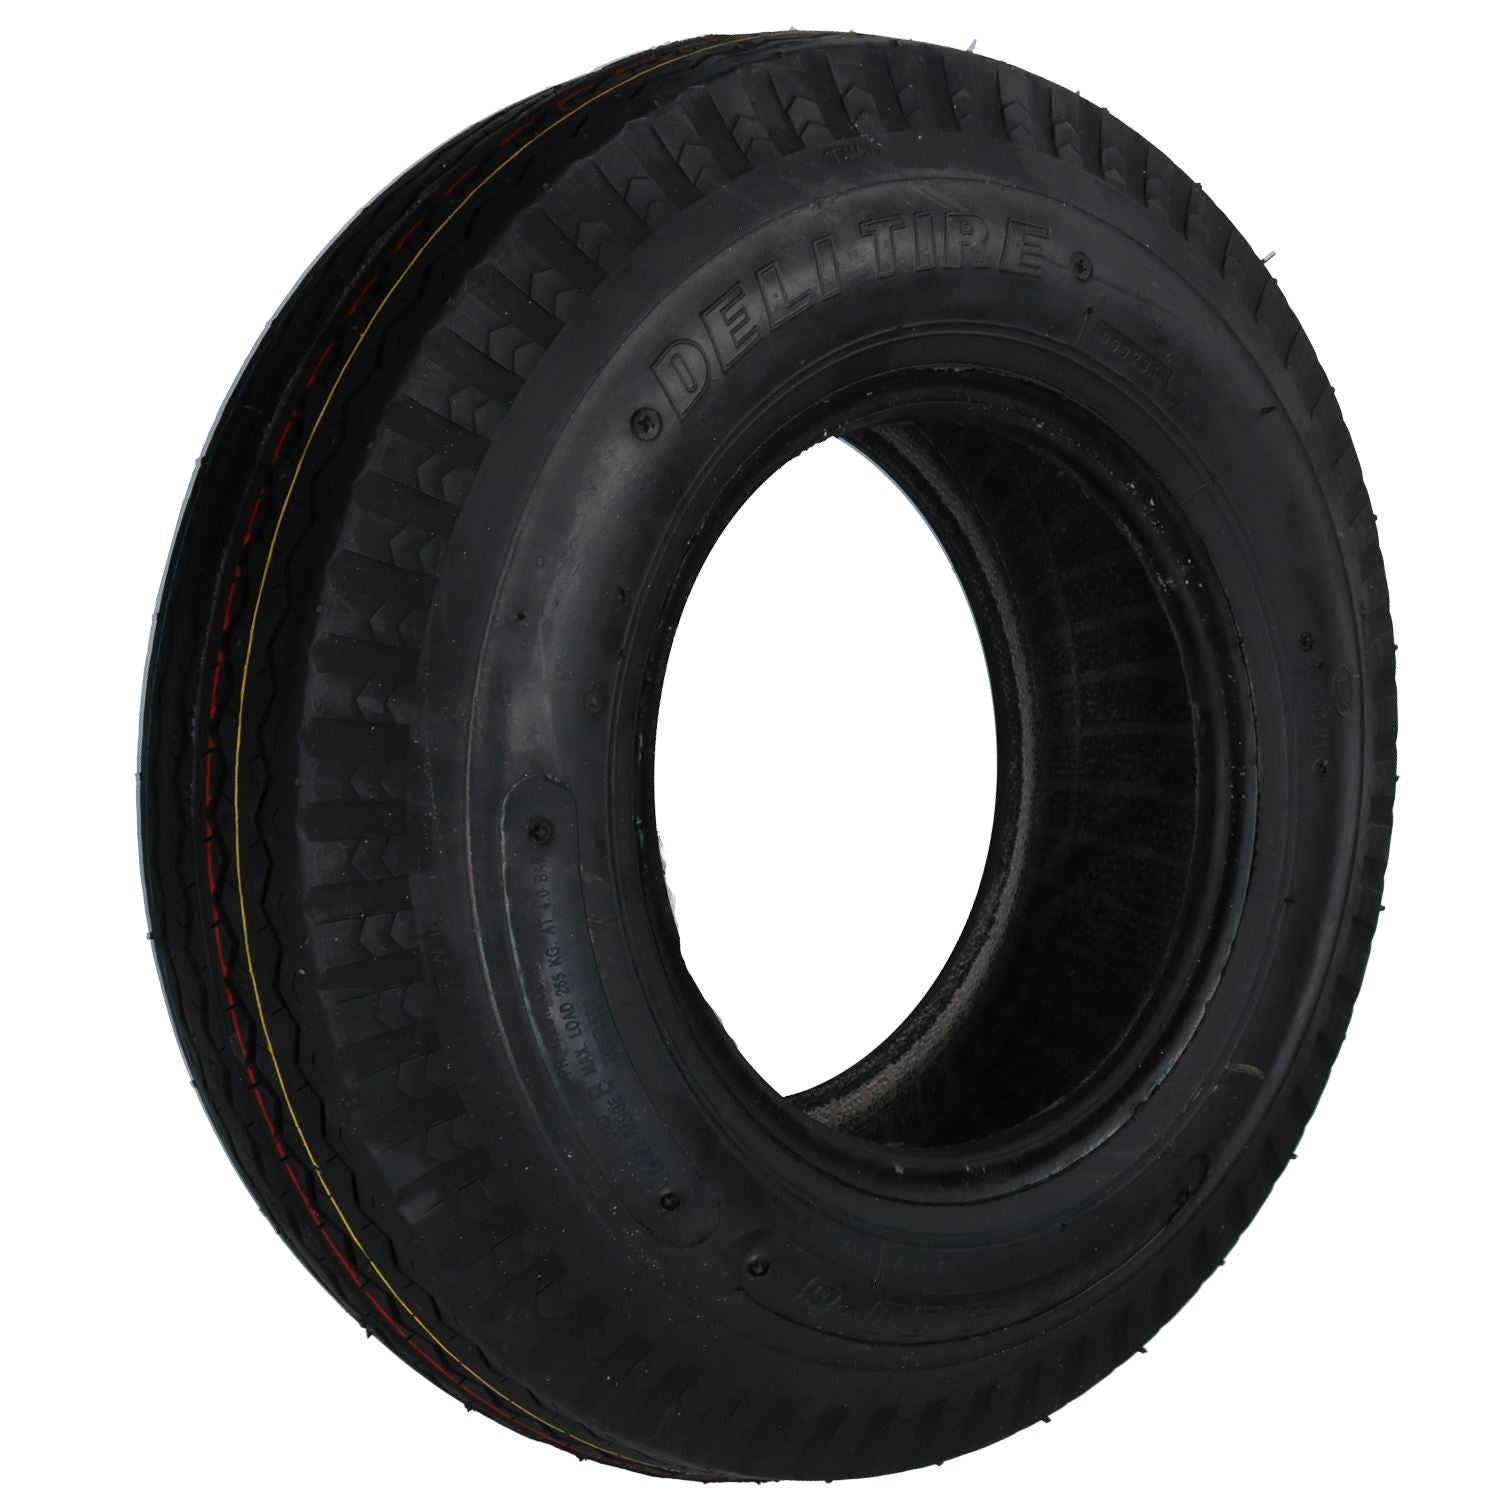 4.00 / 4.80 x 8" 4 Ply High Speed Trailer Tyre Erde Daxara 120 121 122 127